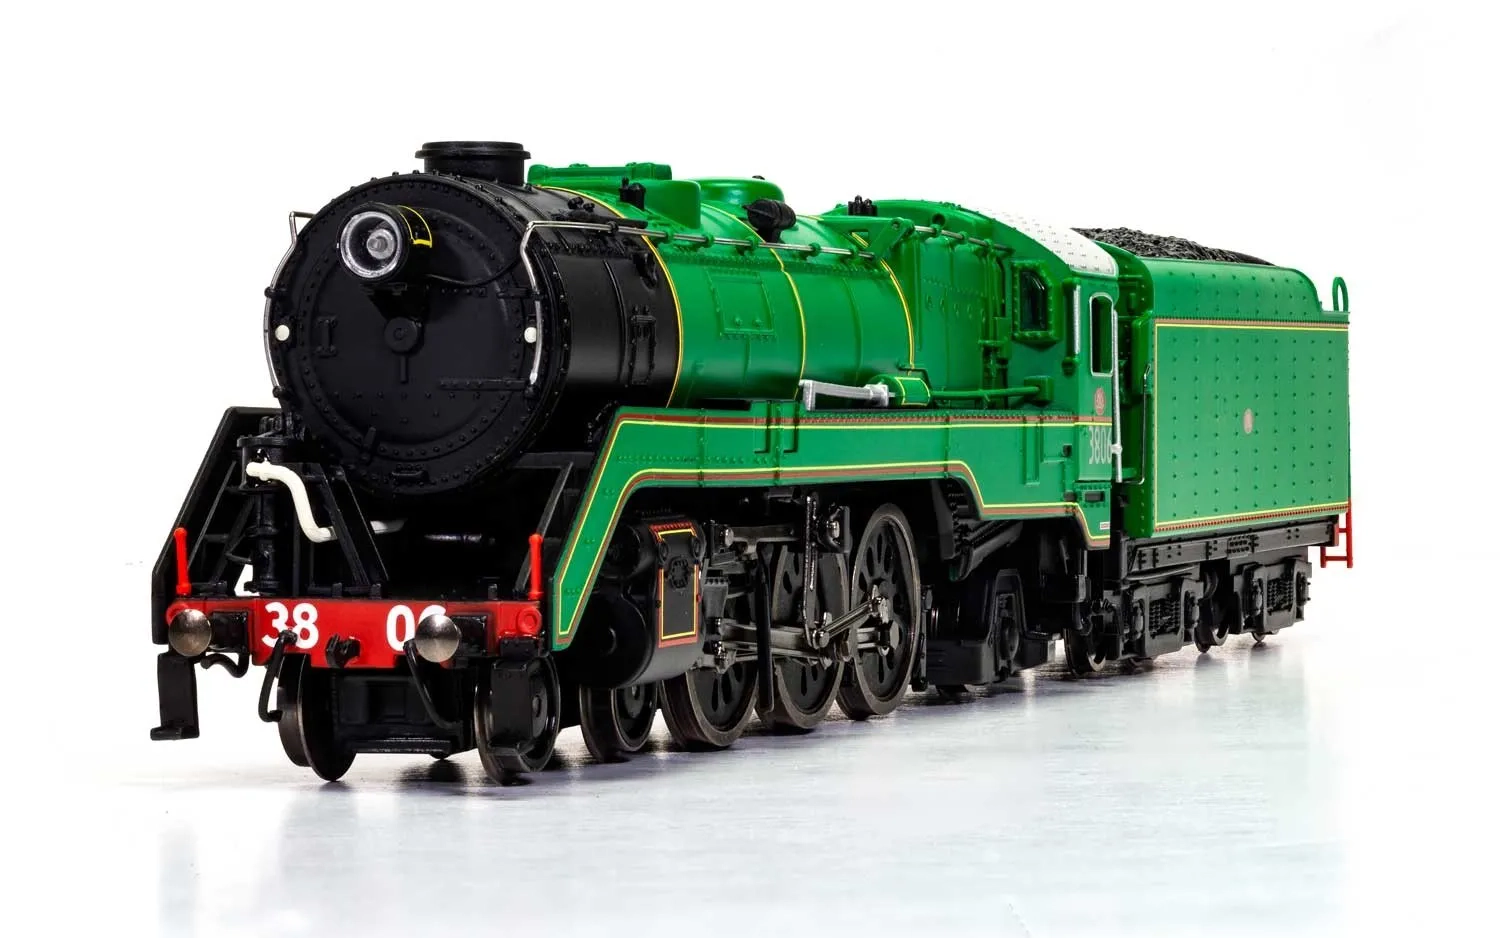 NSW, Dampflokomotive der Reihe C38 "Pacific" 4-6-2 #3806, in schwarz/grüner Lackierung, Ep. III